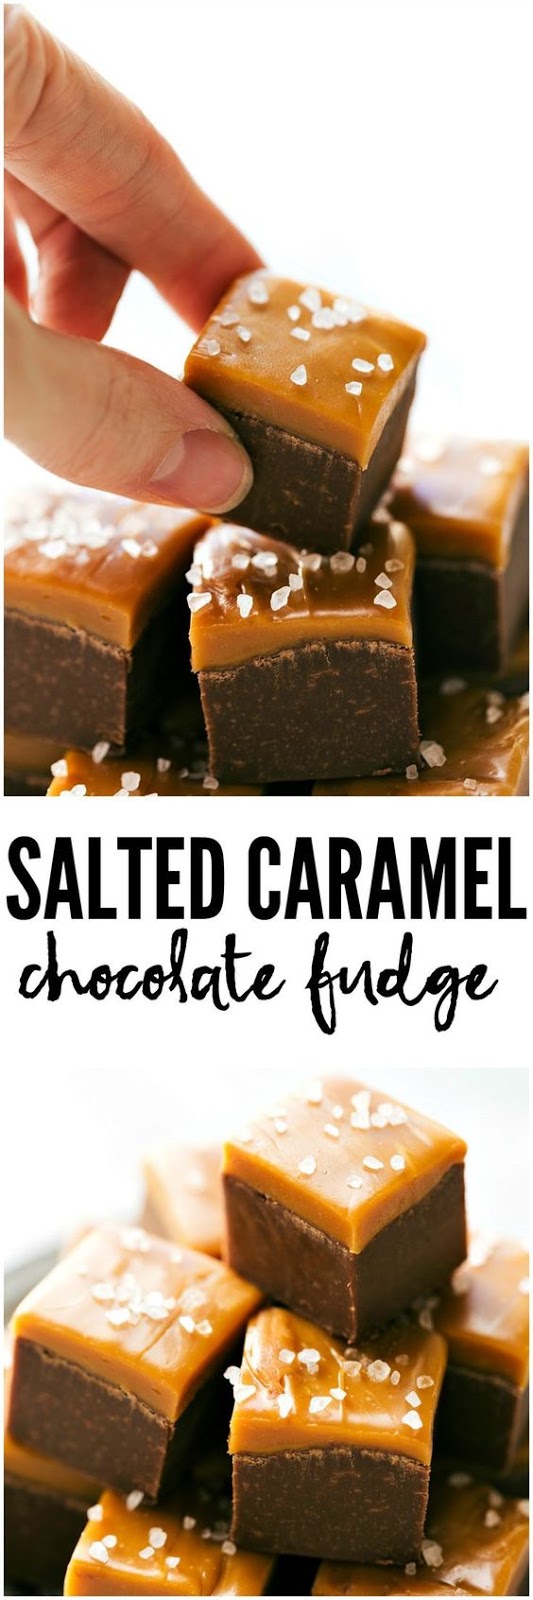 5-ingredient Microwave Caramel Chocolate Fudge Recipe - Girls Dishes